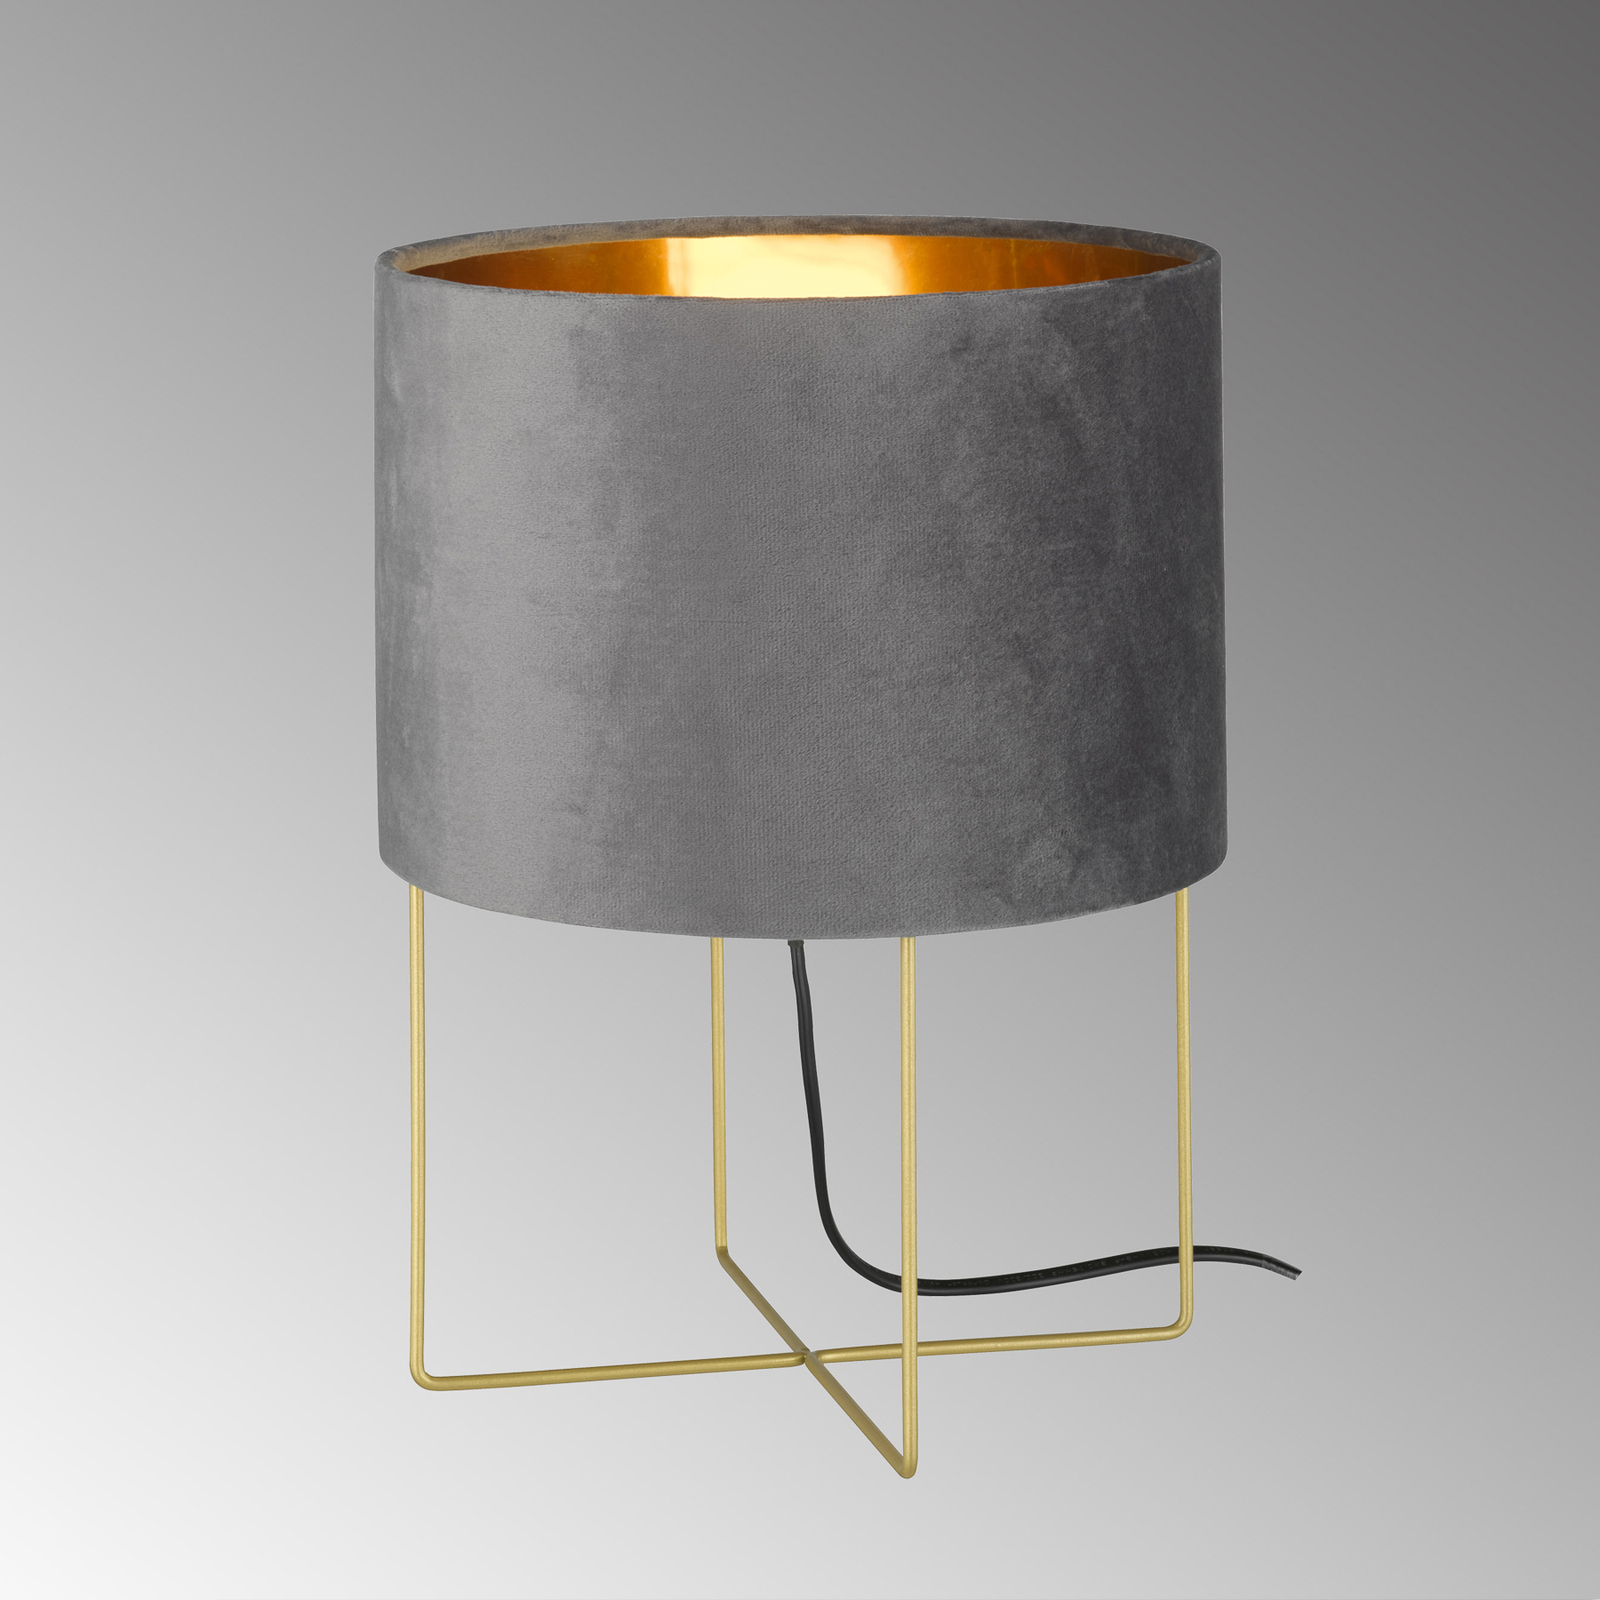 Επιτραπέζιο φωτιστικό Aura, βελούδινο κάλυμμα, ύψος 32 cm, γκρι